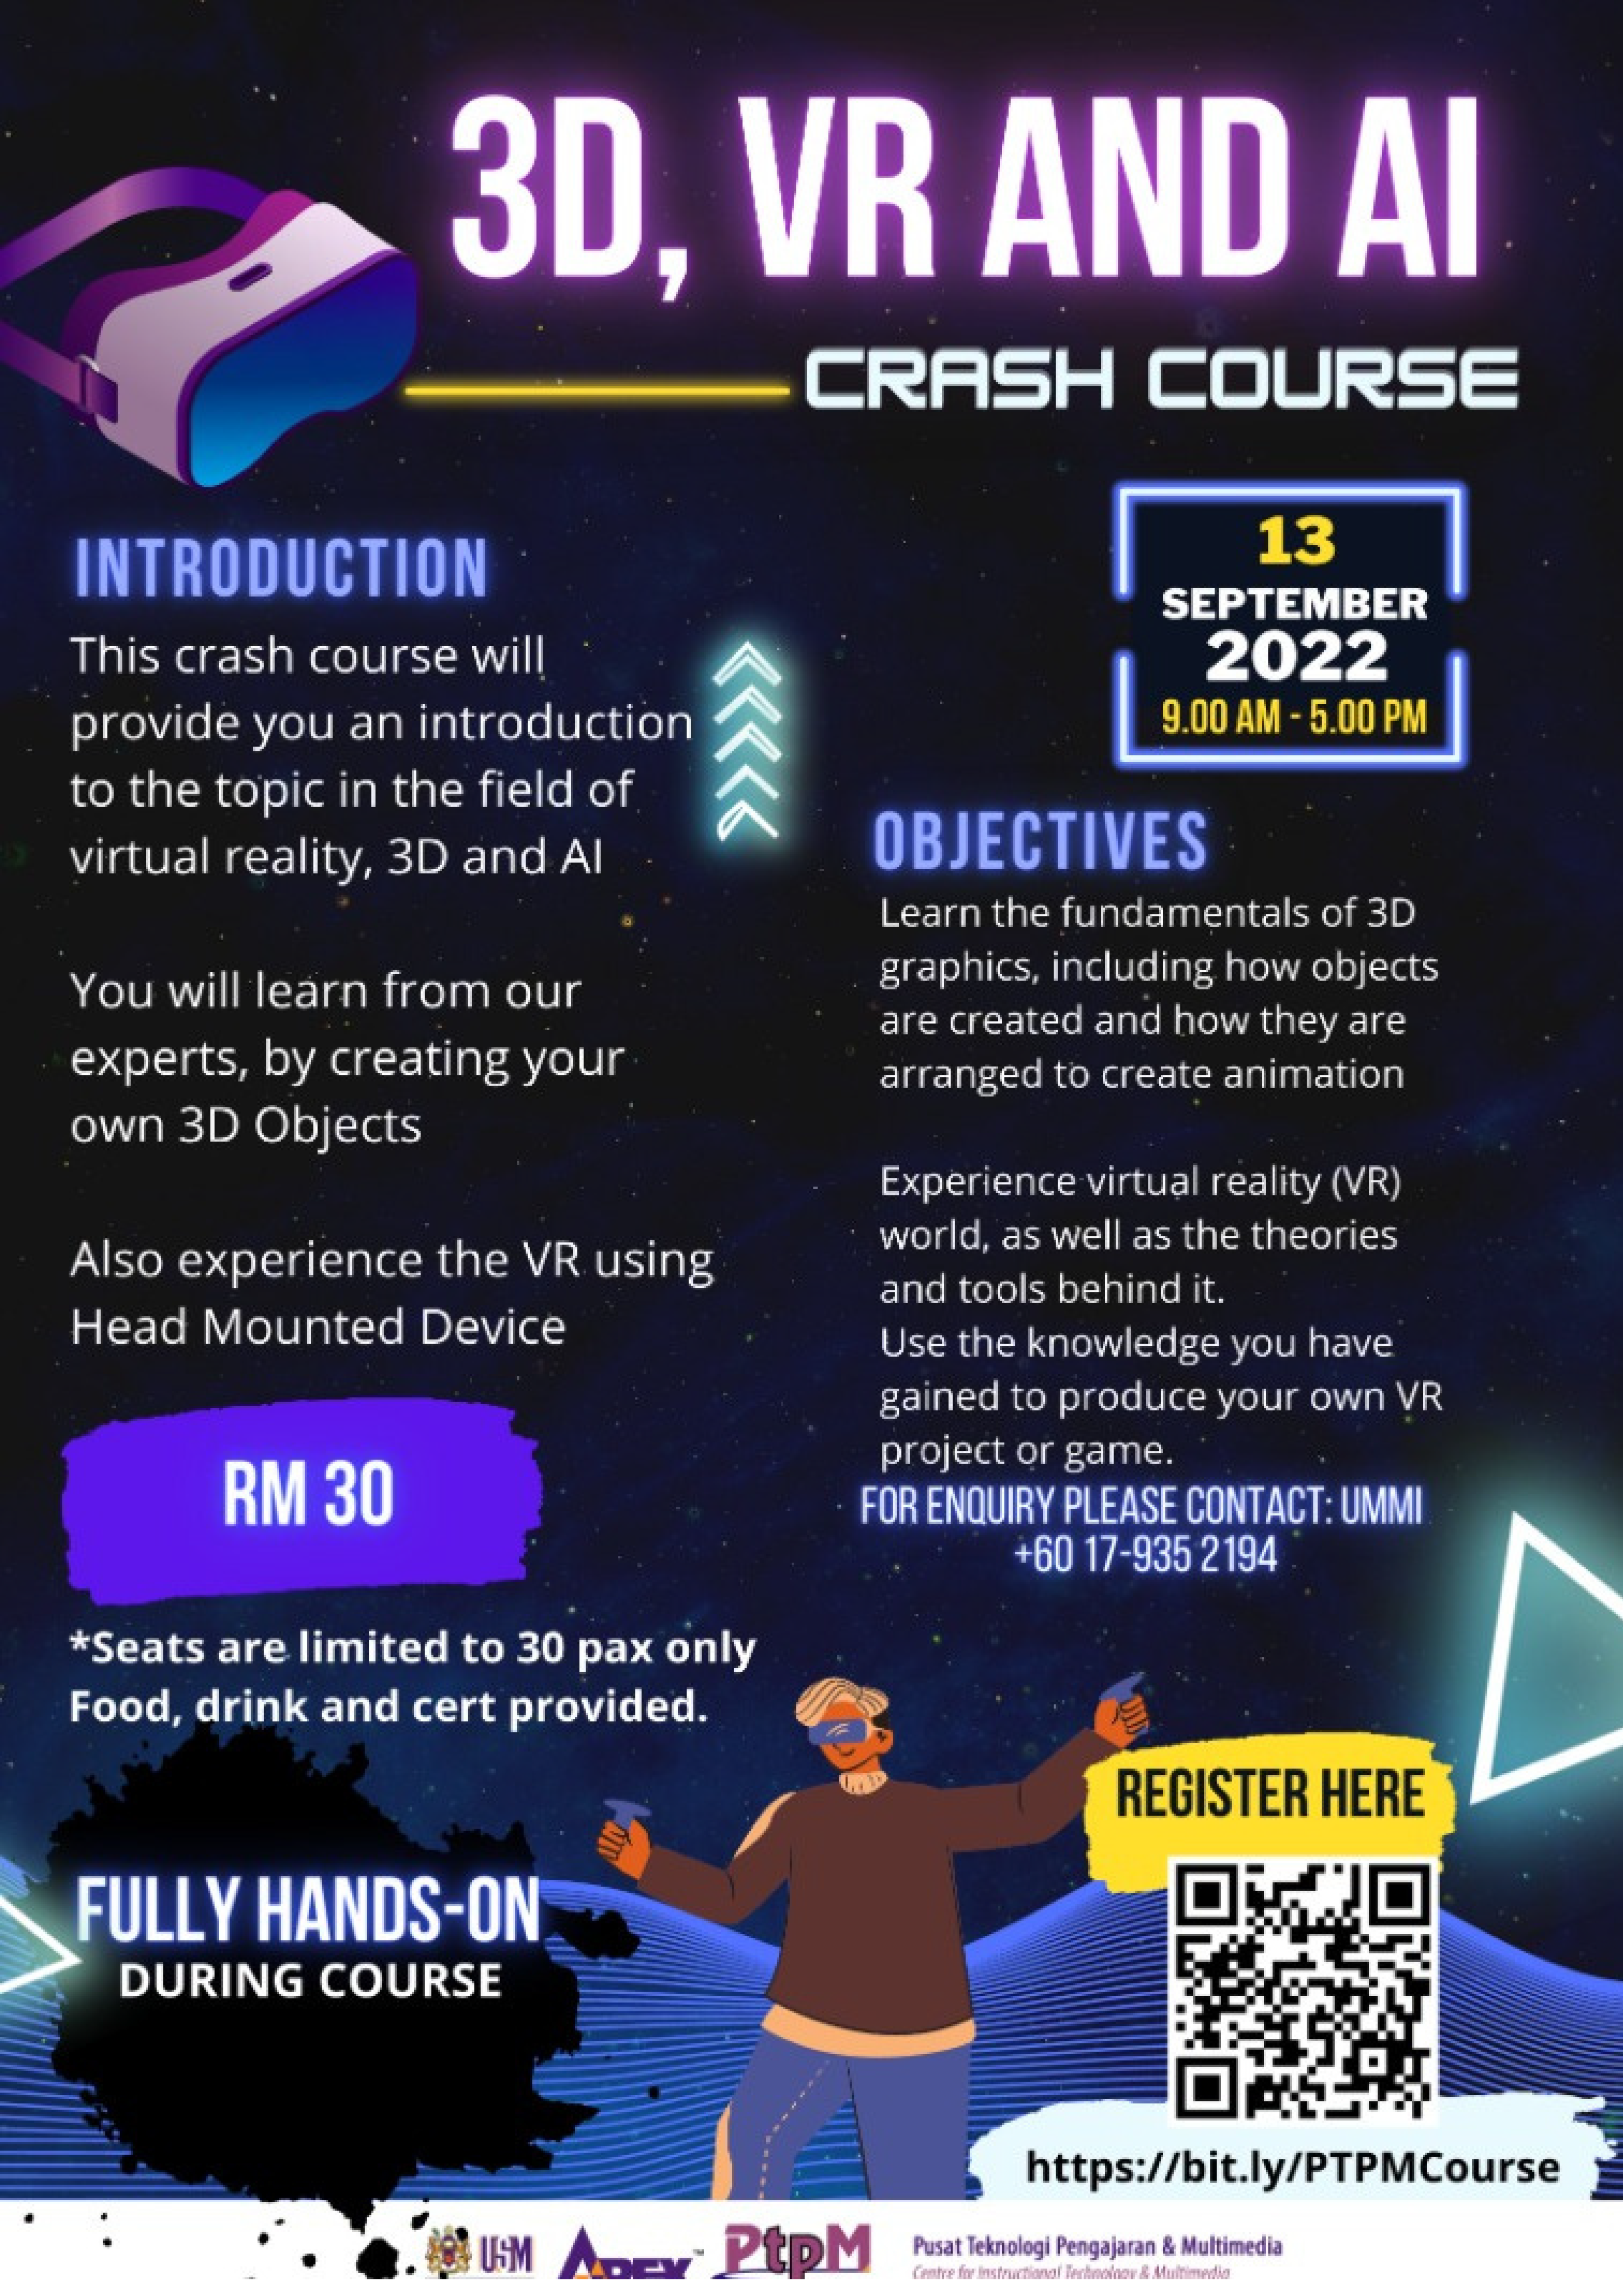 VR Crash Course Page 2